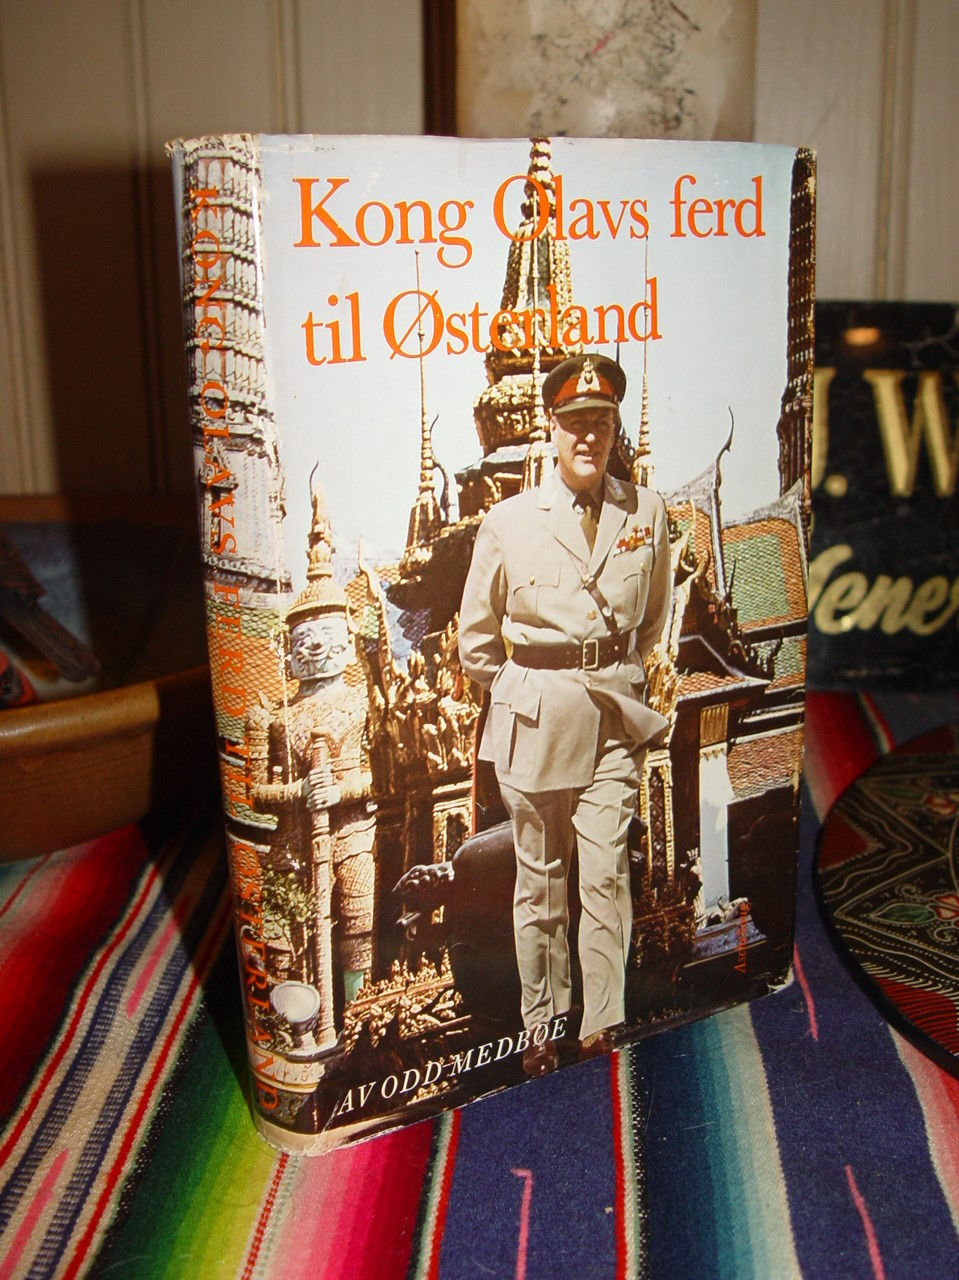 Kong Olavs ferd til Østerland 1965 by Odd
                        Medbøe